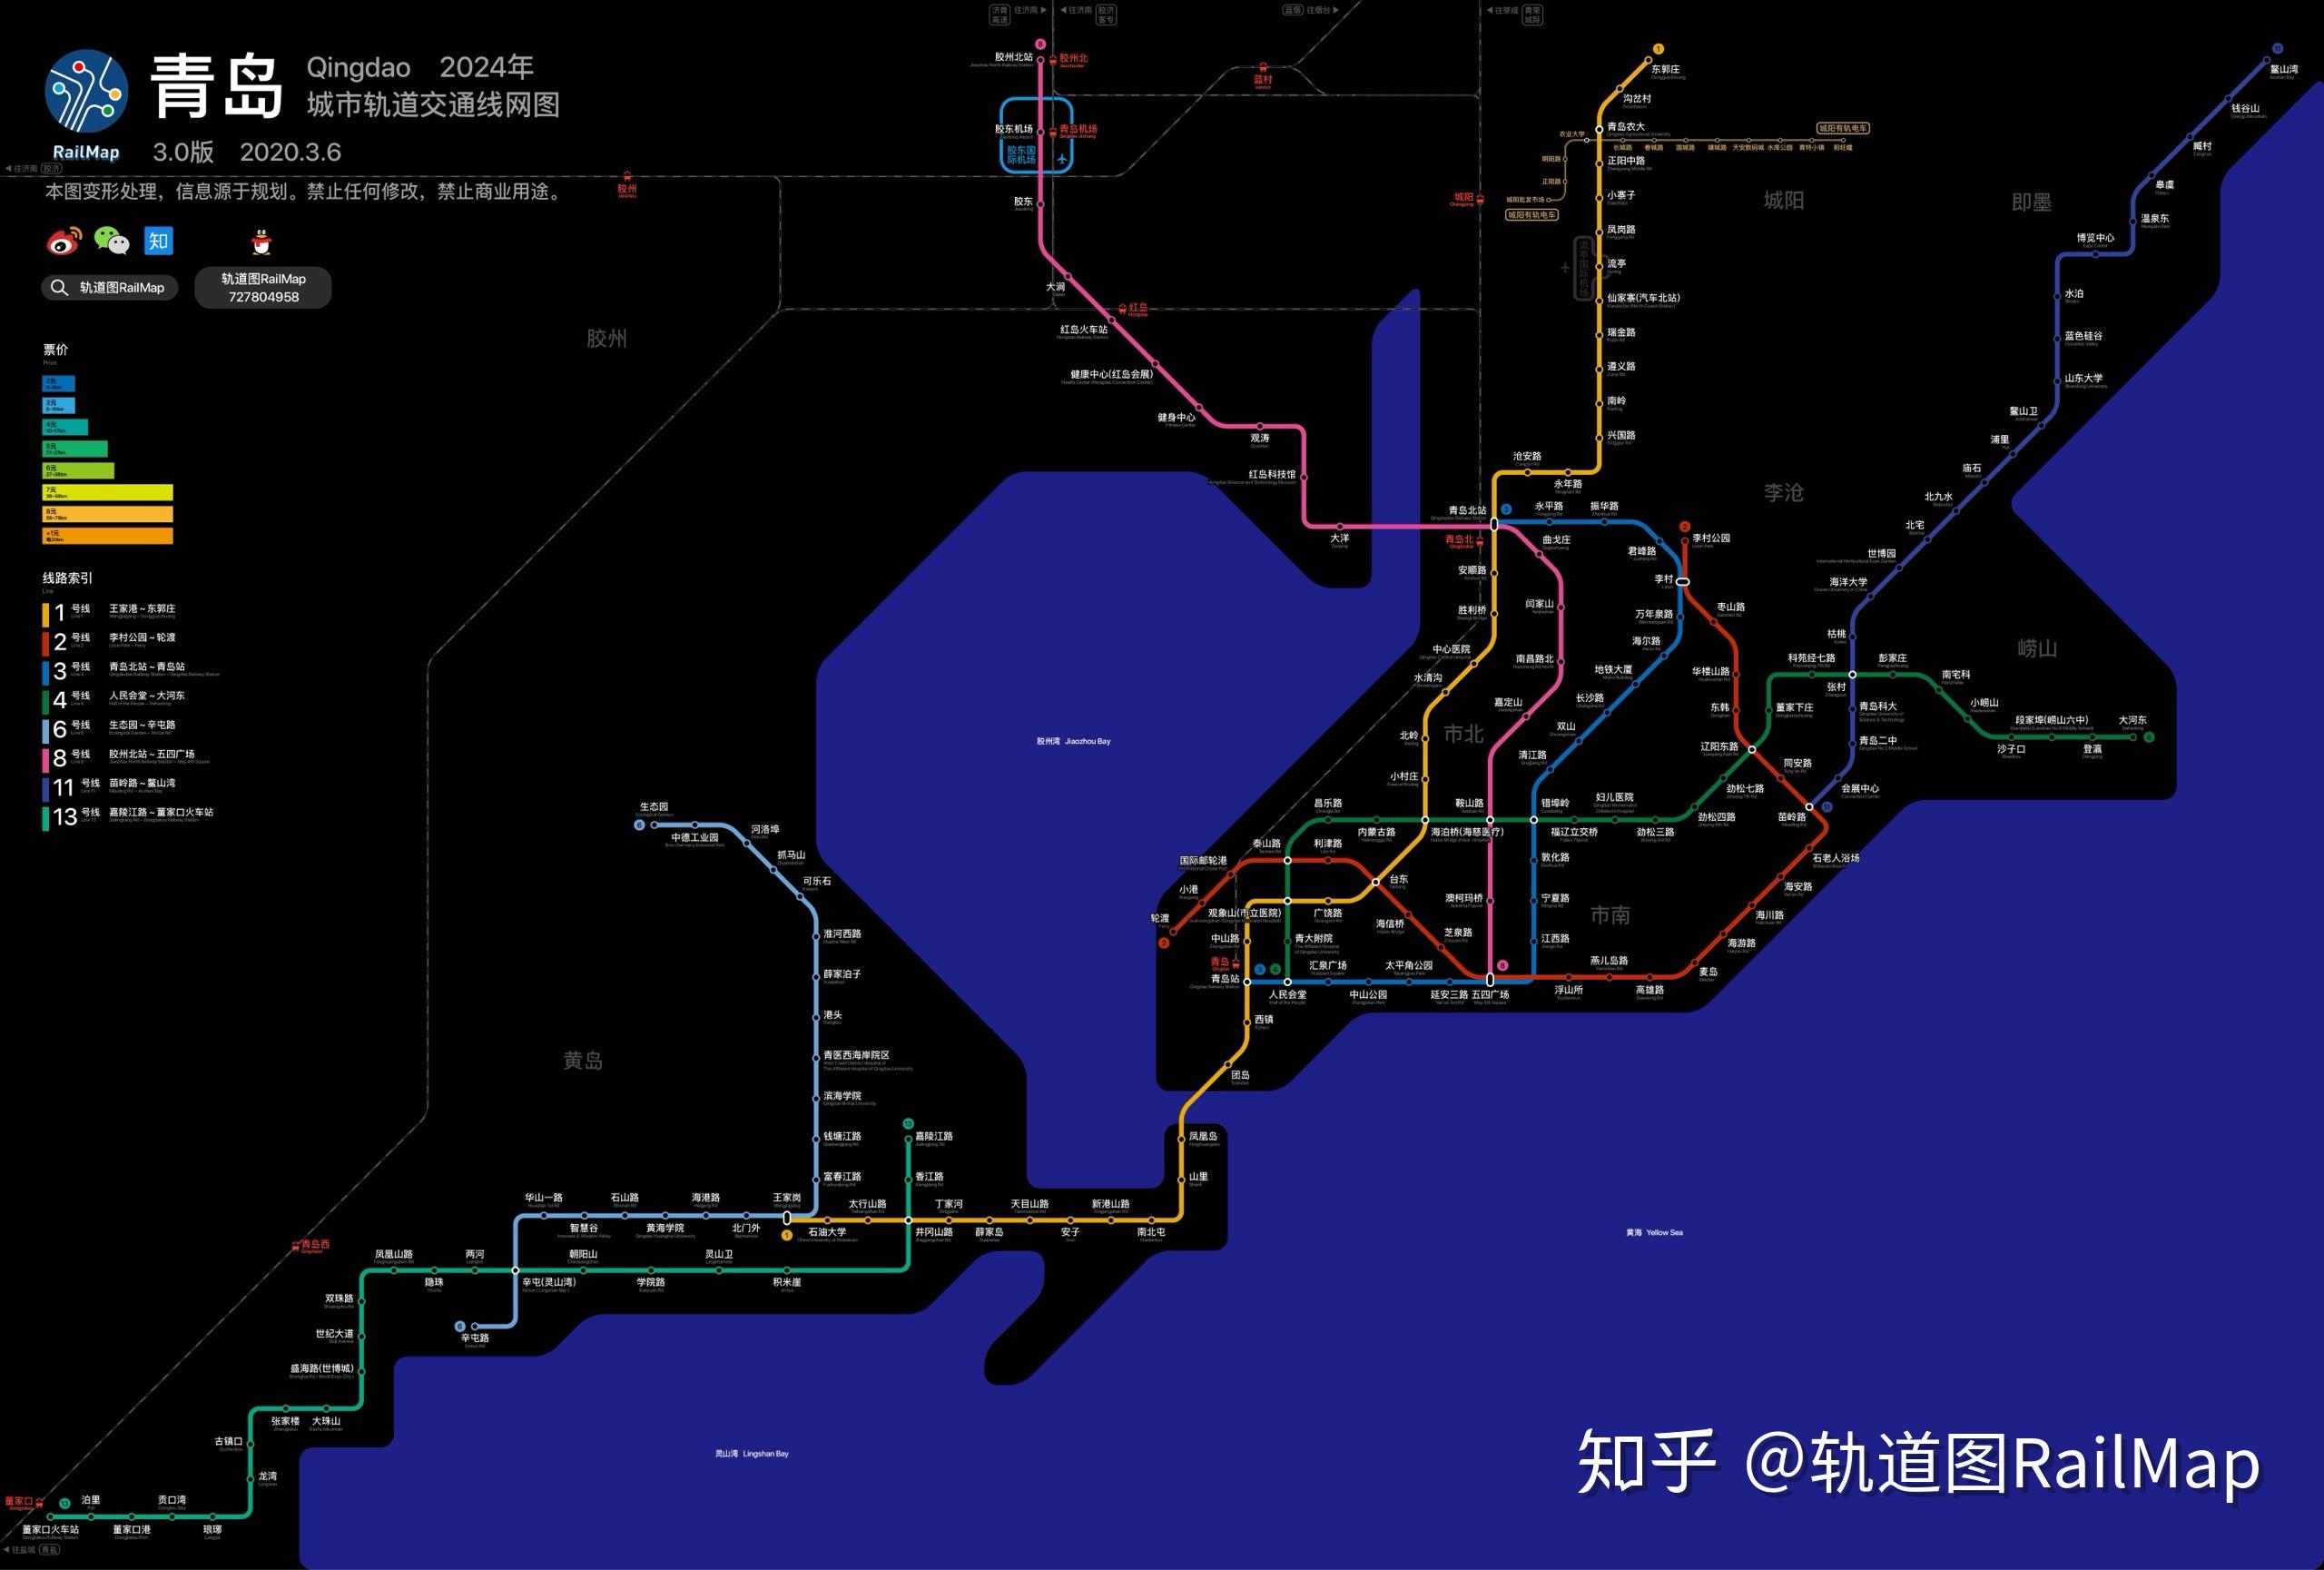 青岛地铁当前线网图高清大图请戳我们的官网:轨道图railmap网站可自由